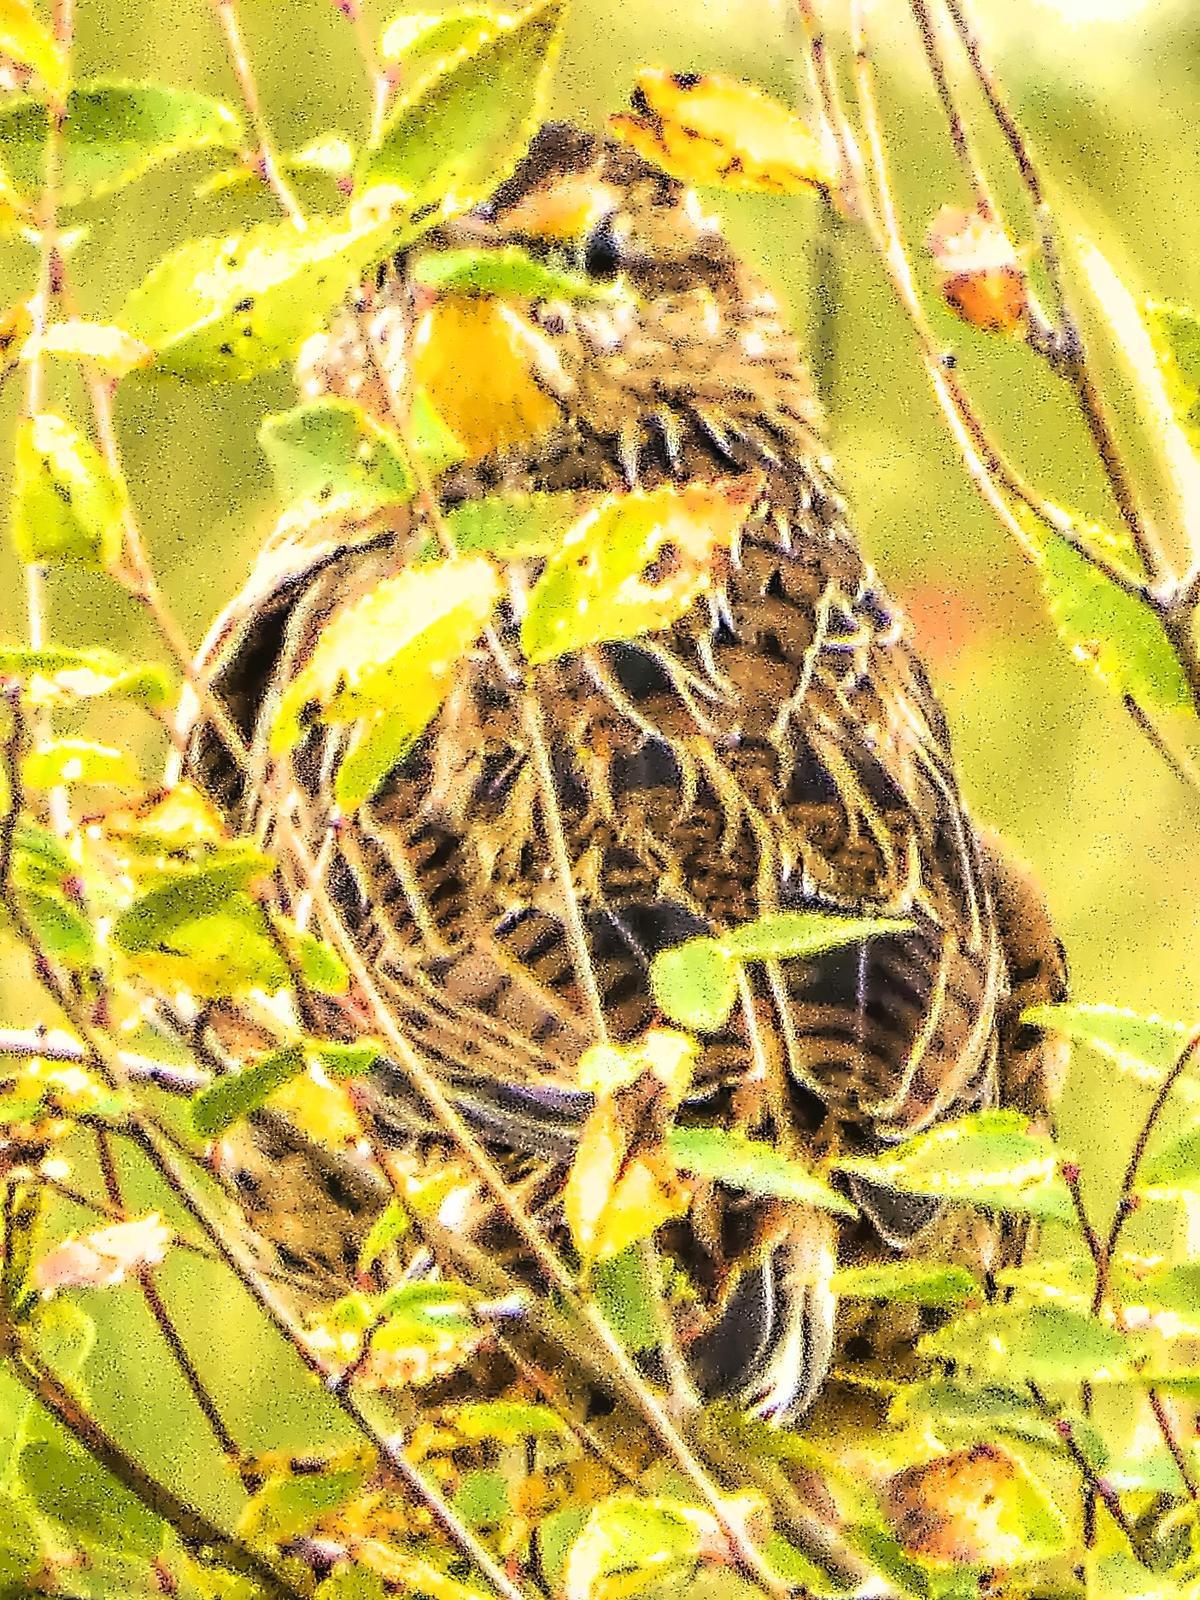 Eastern Meadowlark Photo by Dan Tallman